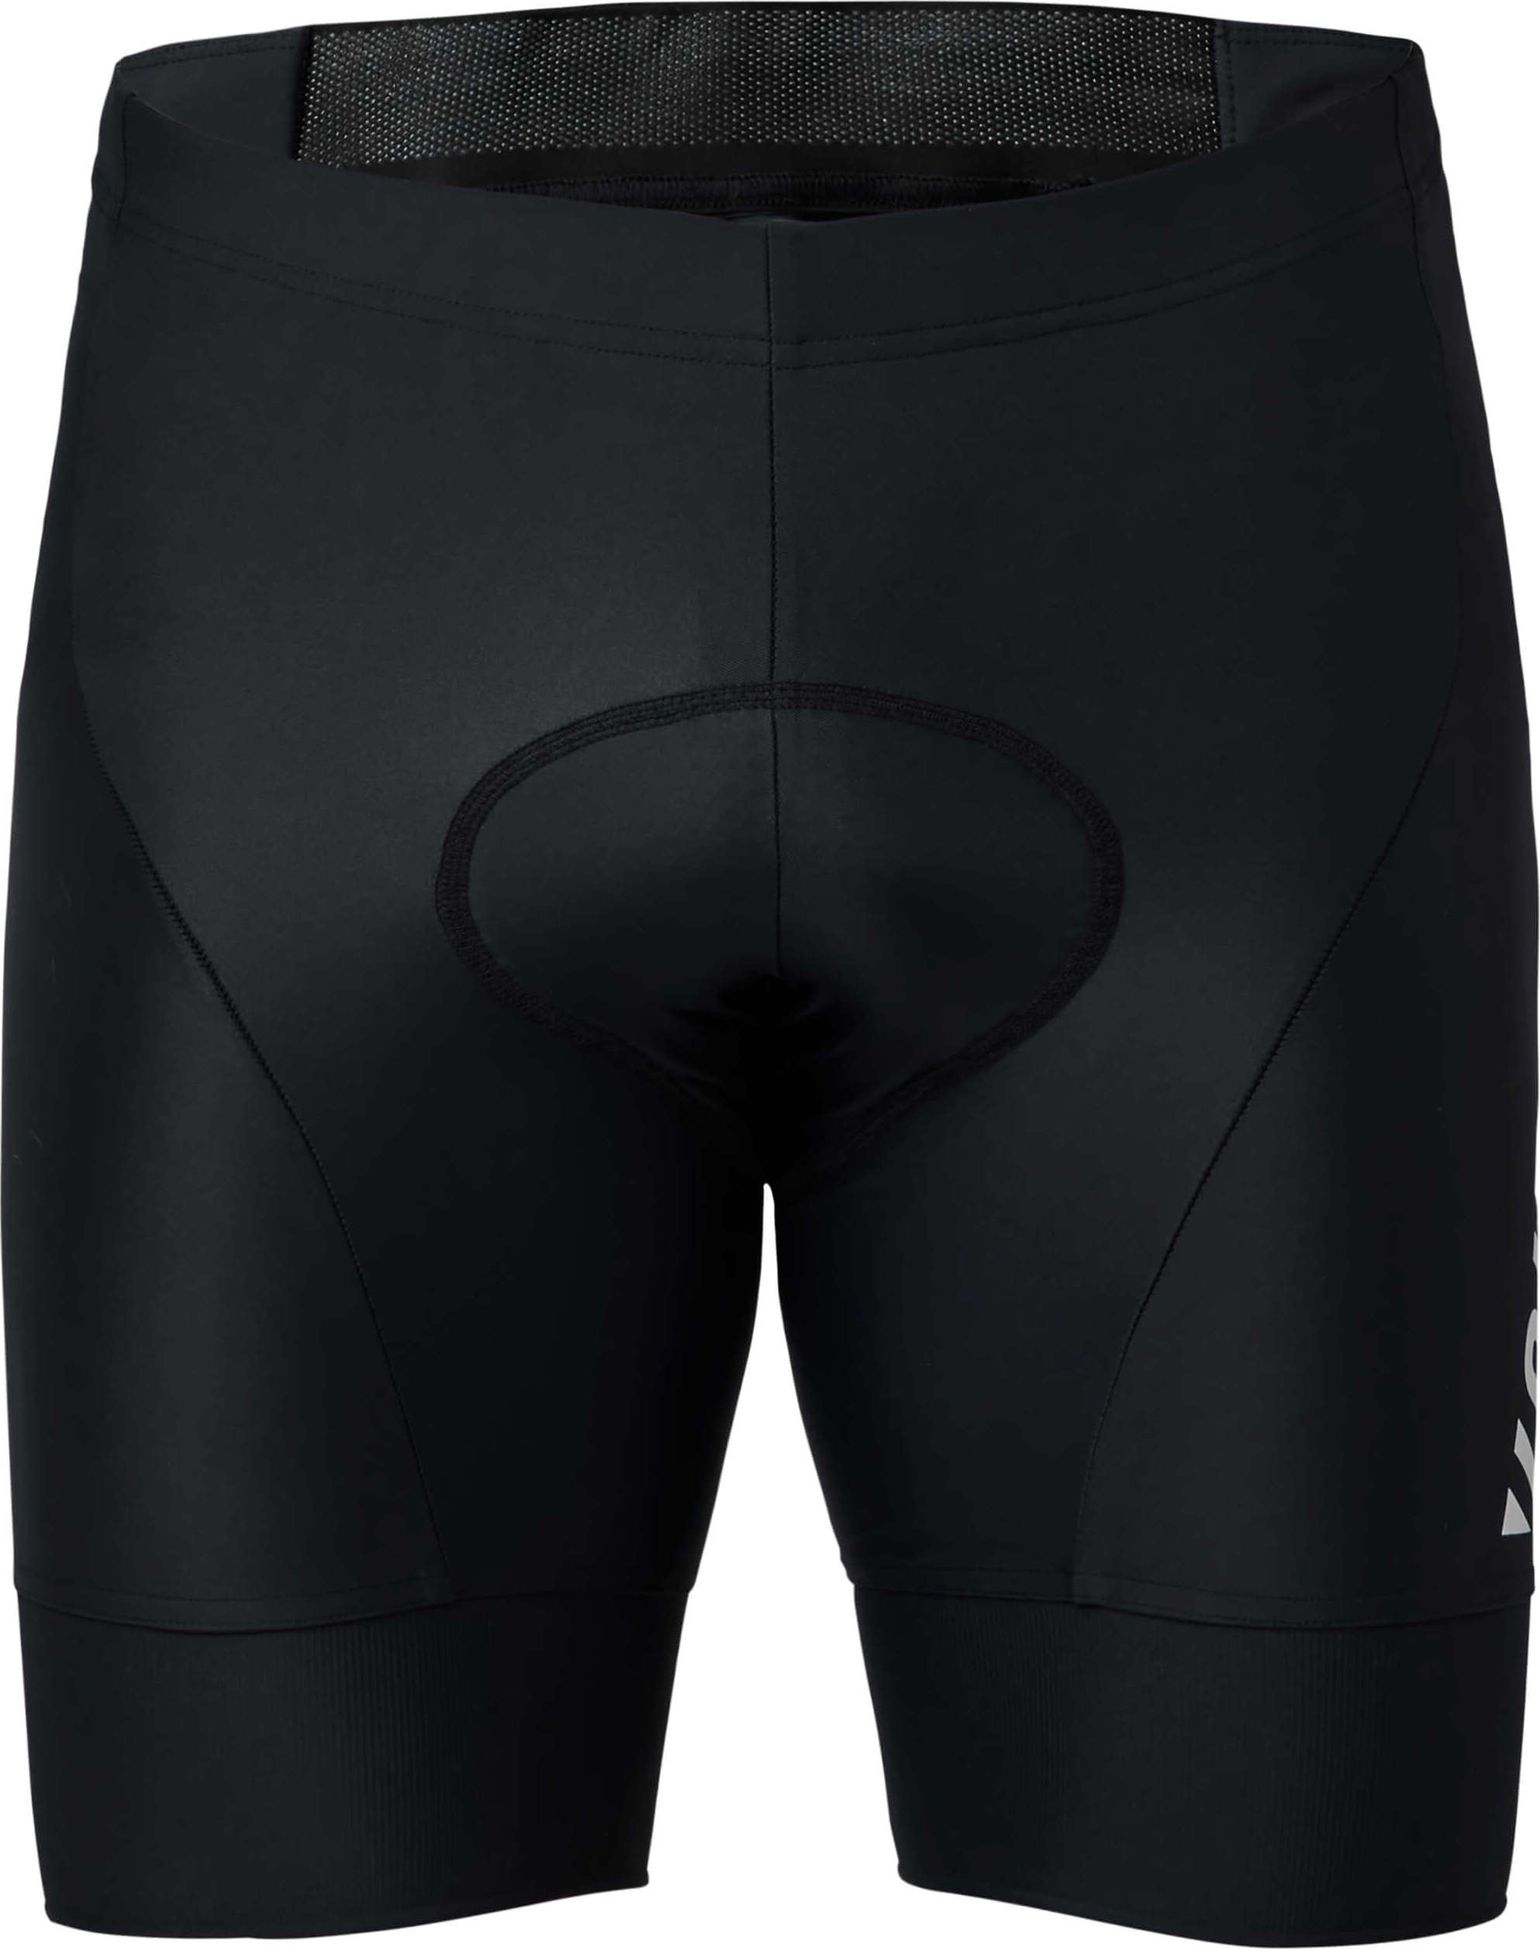 Men's Granite Cycle Shorts Black